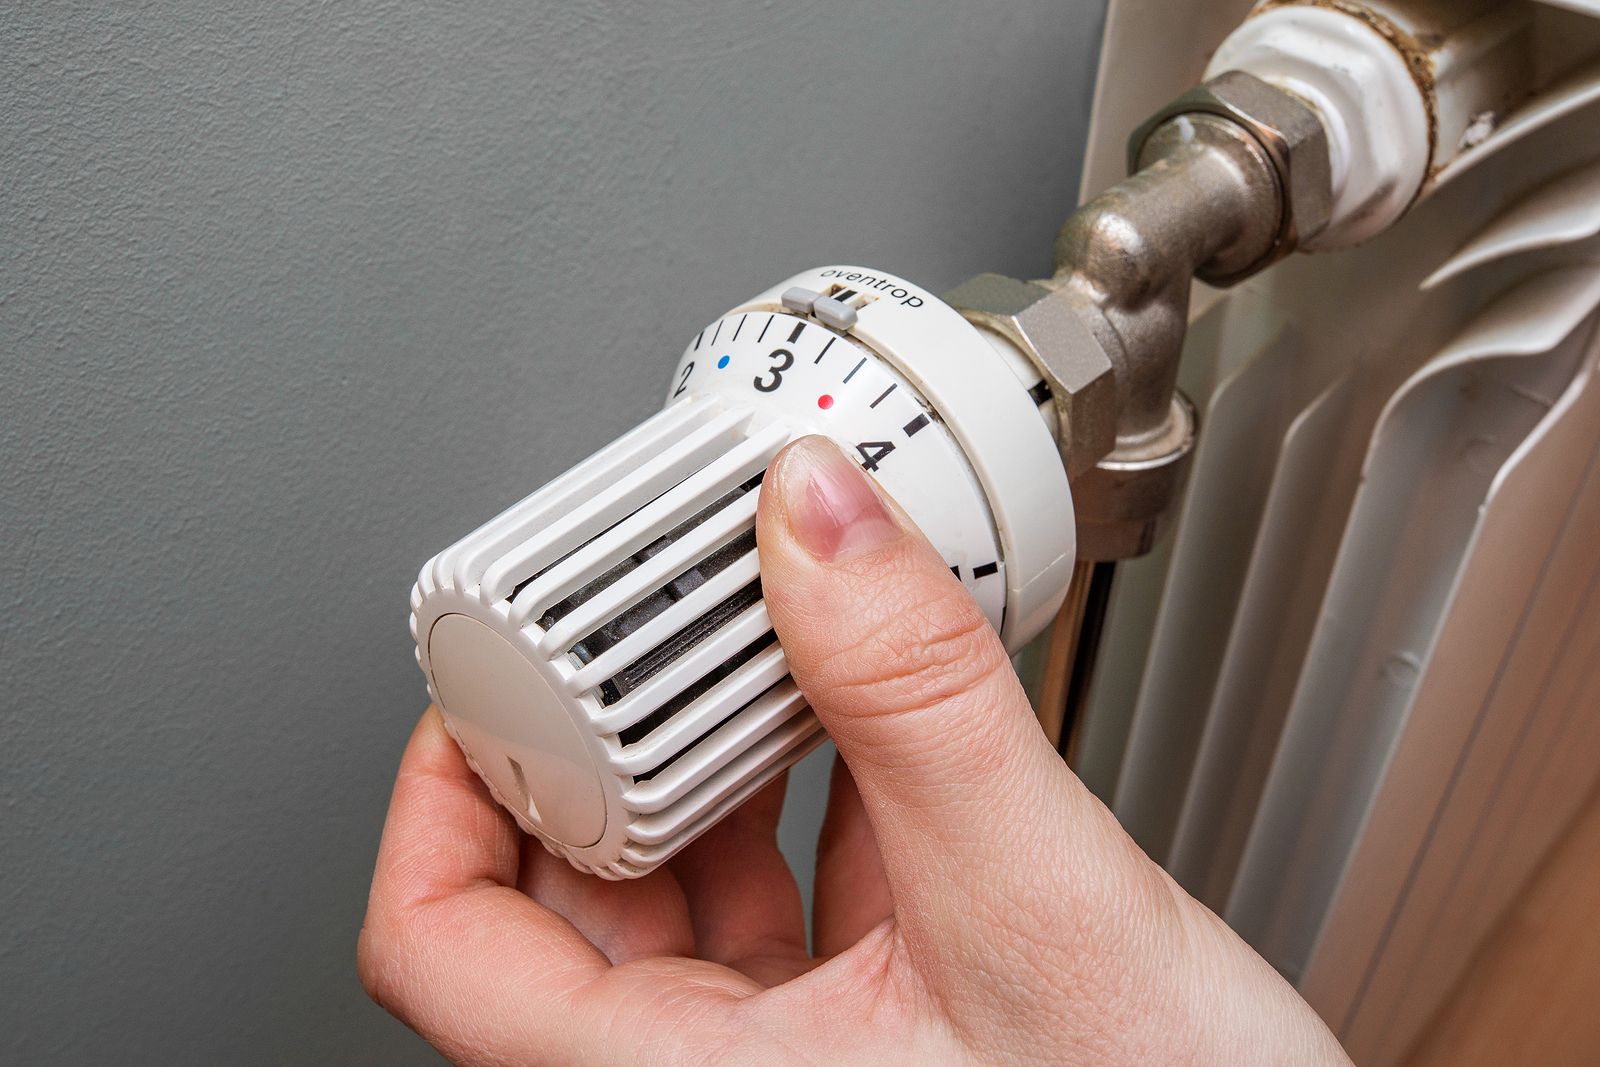 Apagar y encender la calefacción o mantenerla al mínimo: ¿con qué opción se ahorra más?(BigStock)